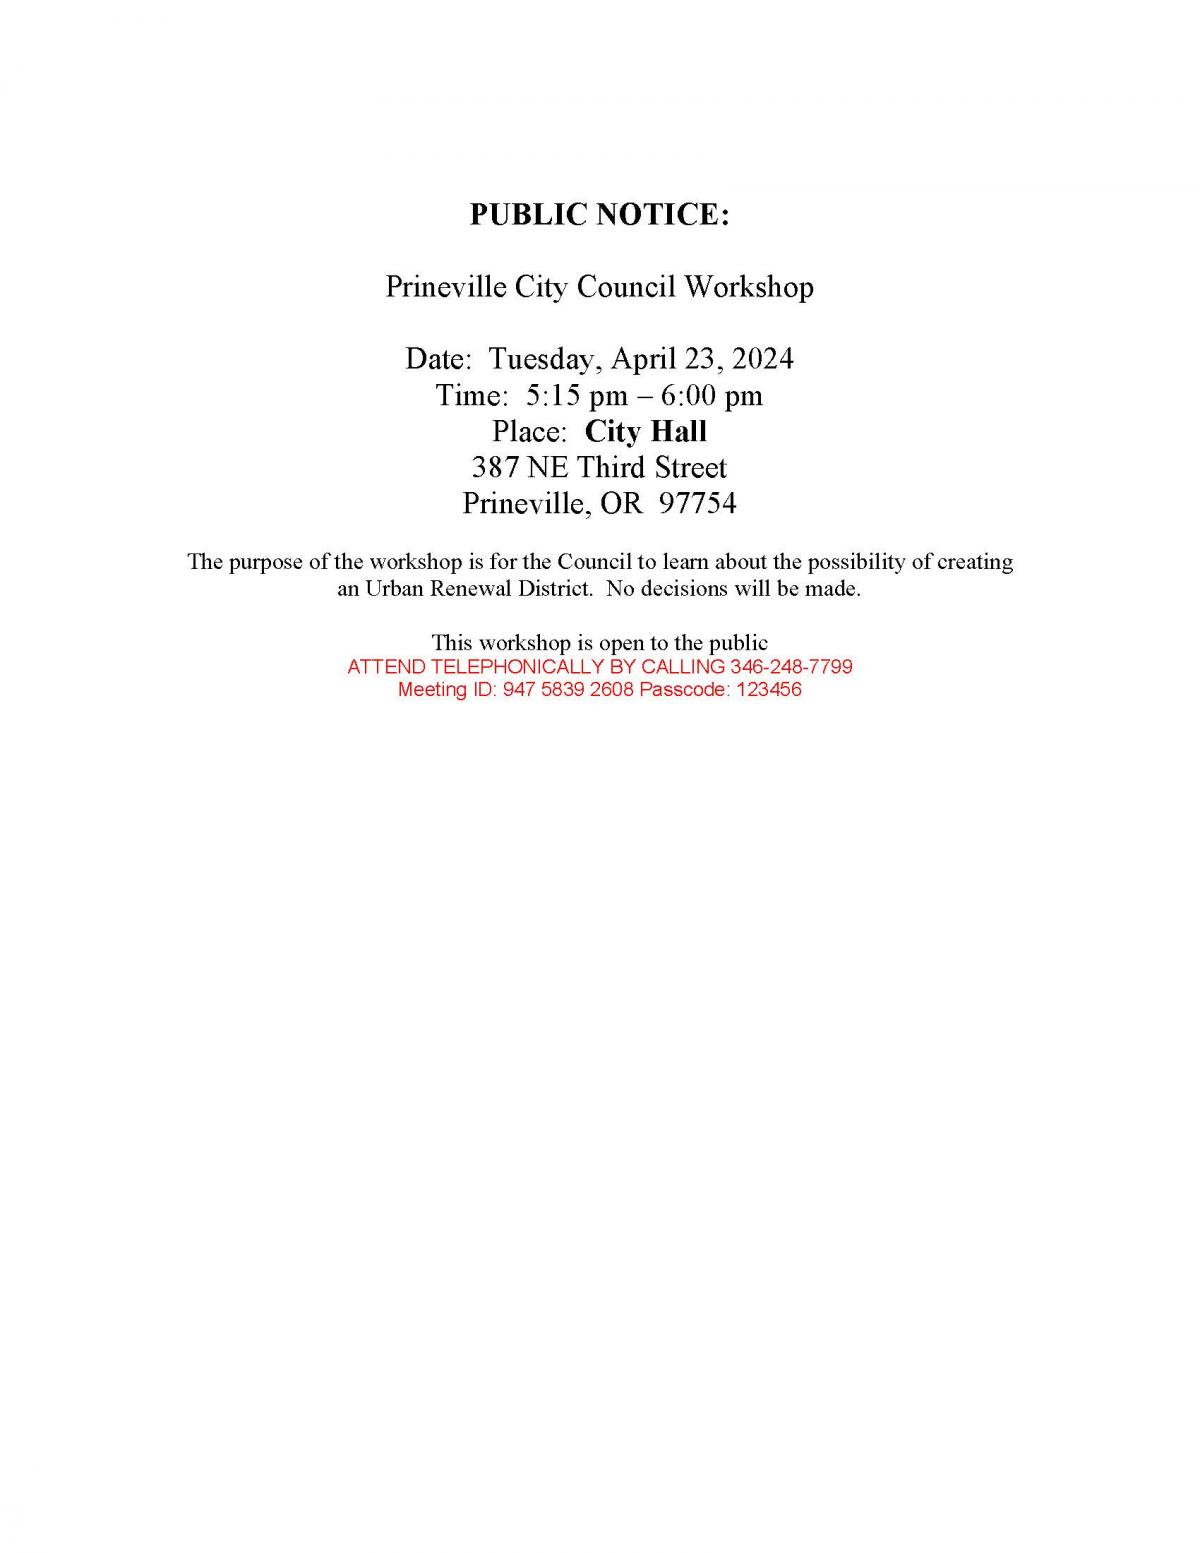 Public Notice - Council Workshop 4-23-2024